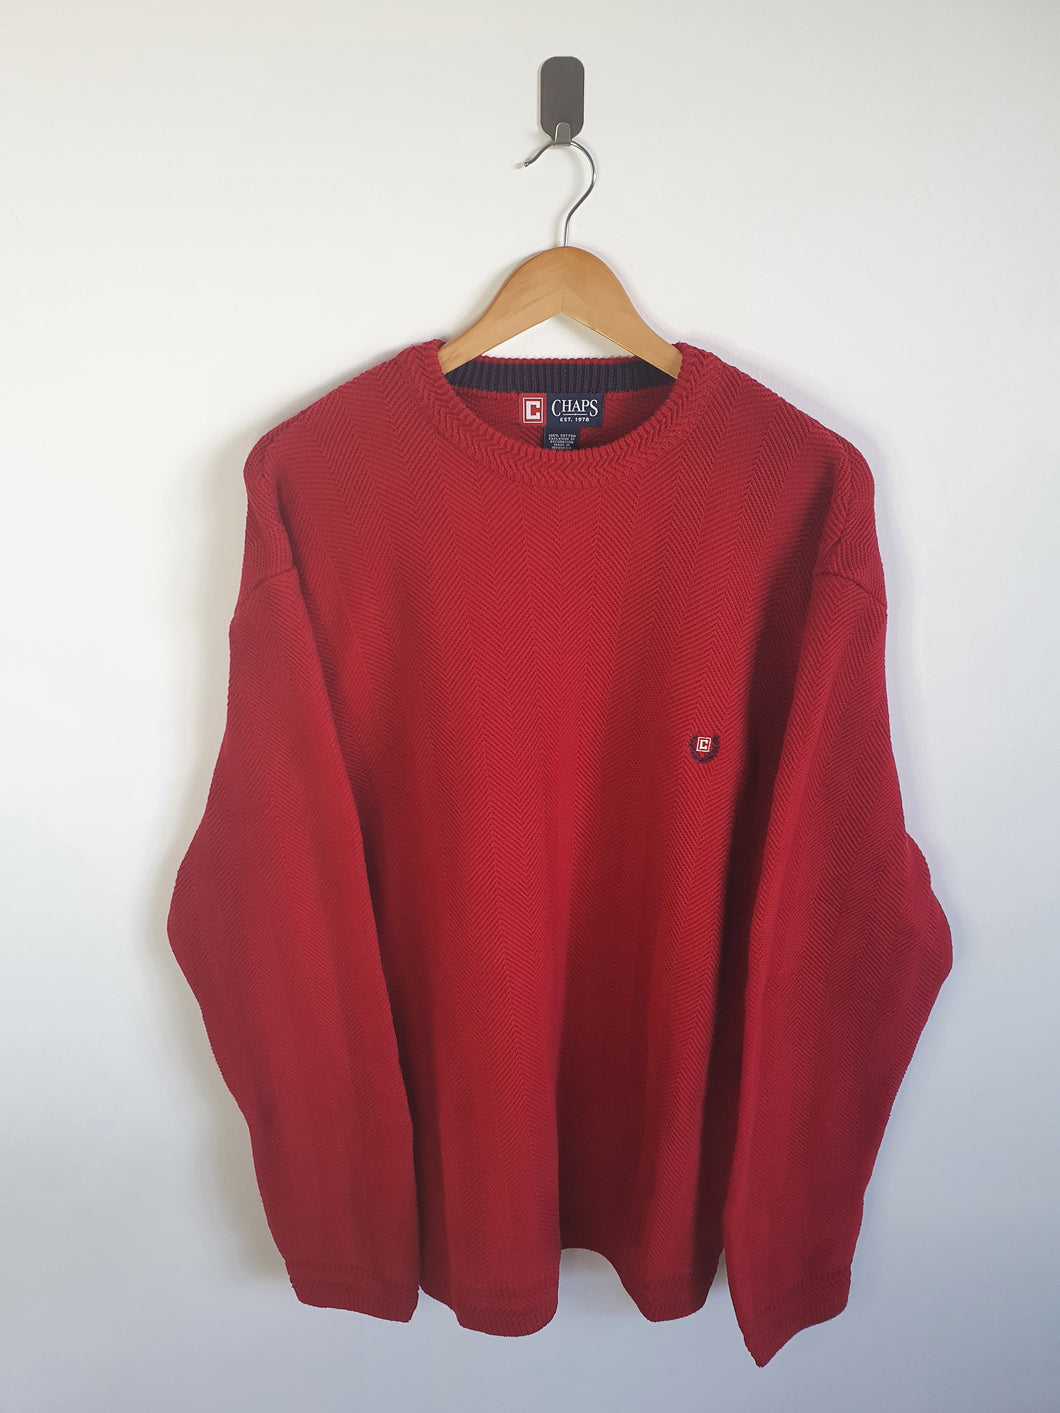 Ralph Lauren Chaps Red Crew Neck Sweatshirt - XL